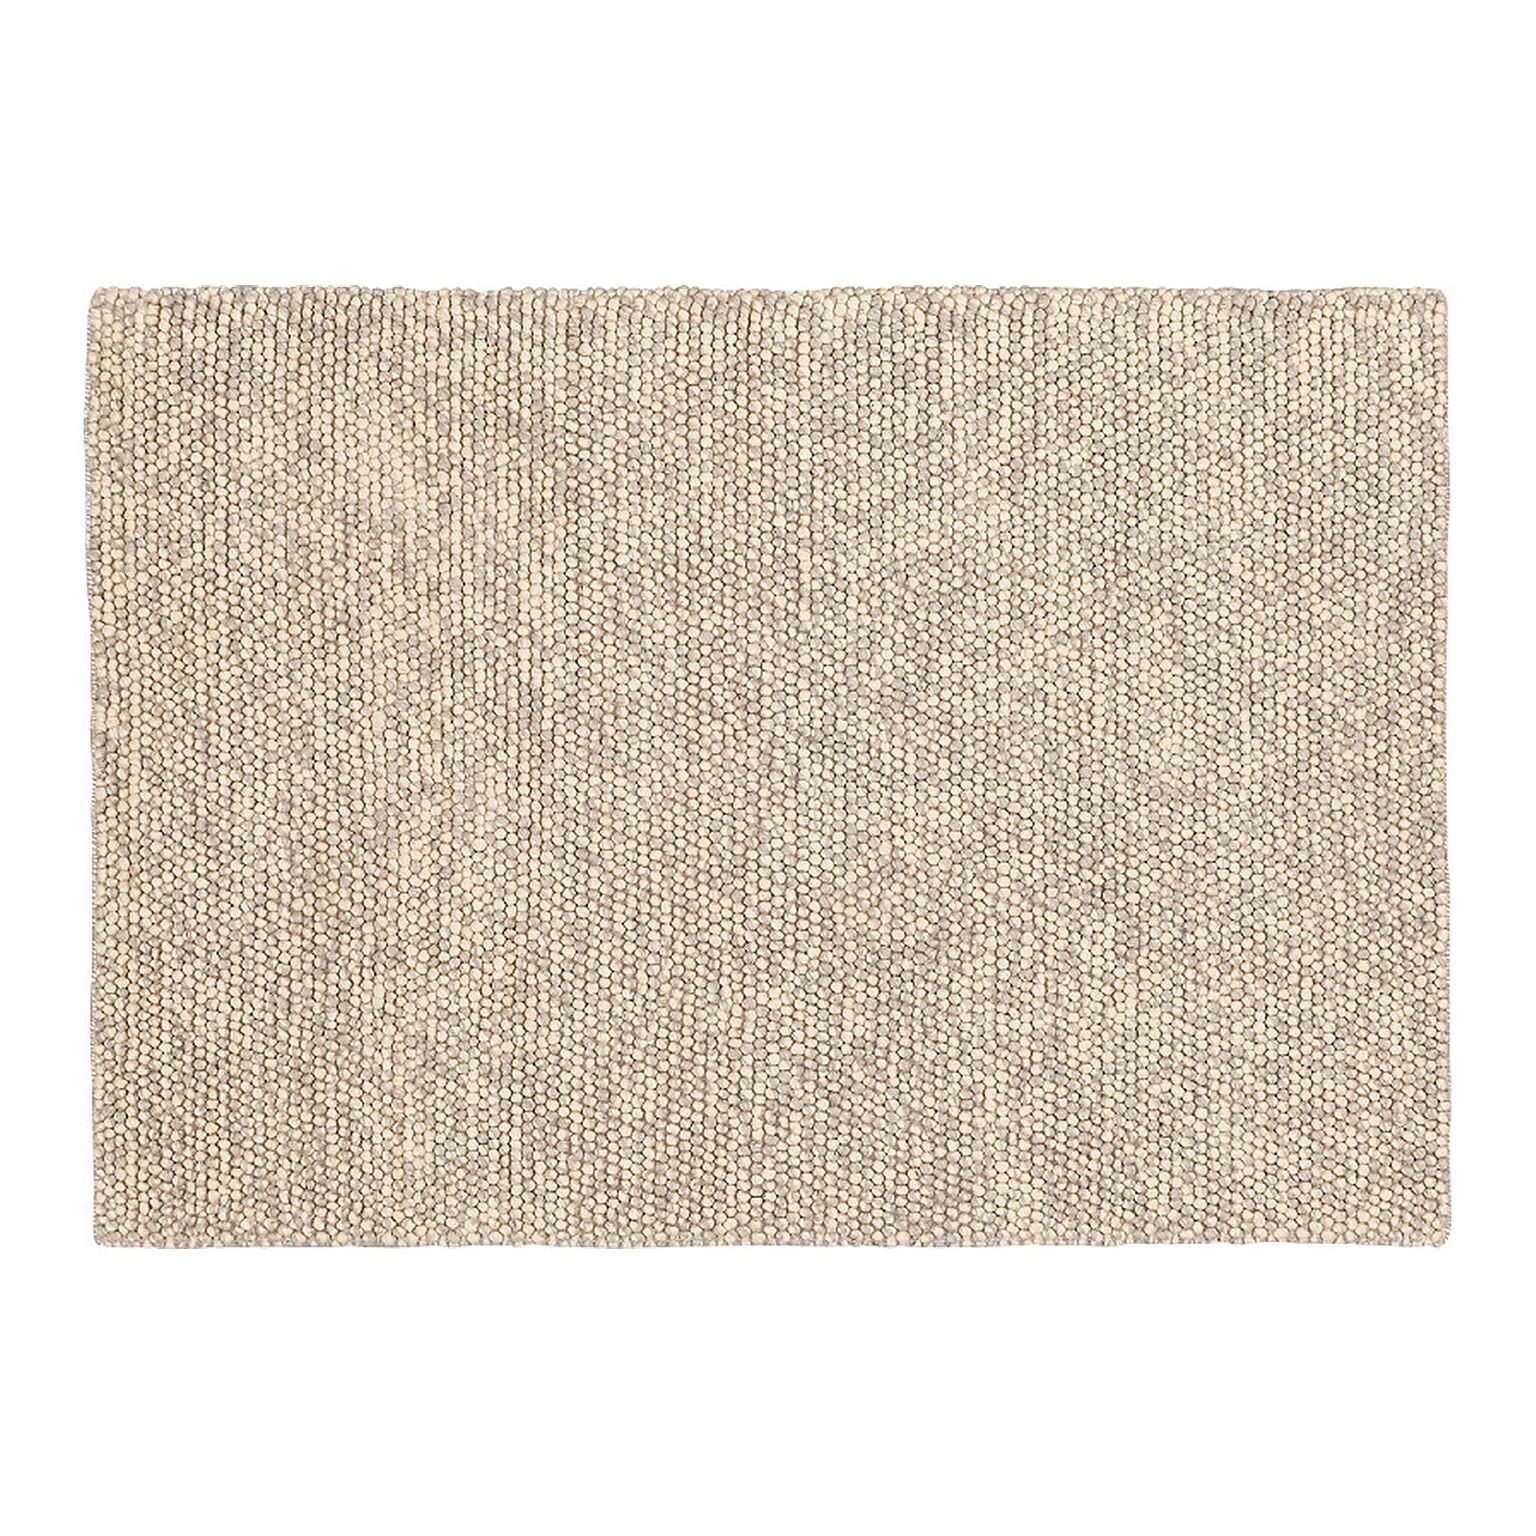 防炎 輸入絨毯 インド製 輸入カーペット wool 毛100% プレーベル prevell マシュー 約190×190cm 床暖房対応 手織り 北欧 モダン 素朴 ナチュラル 引っ越し 新生活